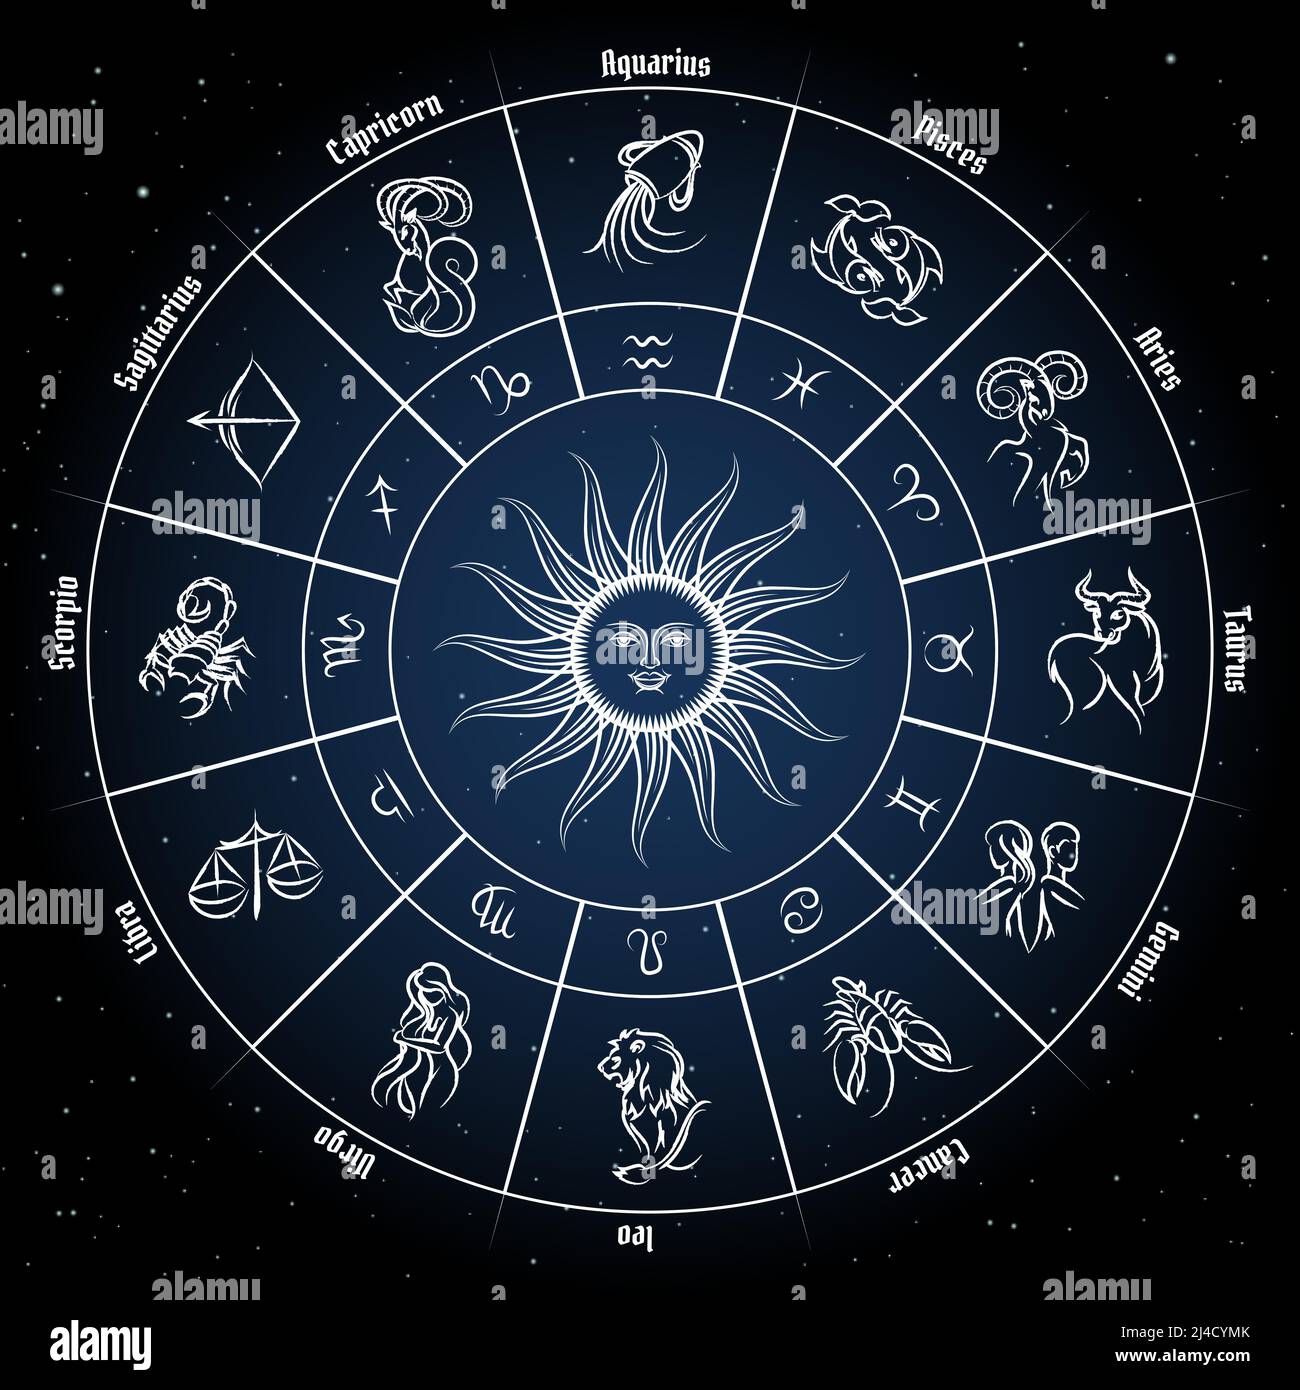 Cercle de zodiaque avec des signes d'horoscope. Poissons poissons scorpion verseau zodiak aries virgo. Illustration vectorielle Illustration de Vecteur